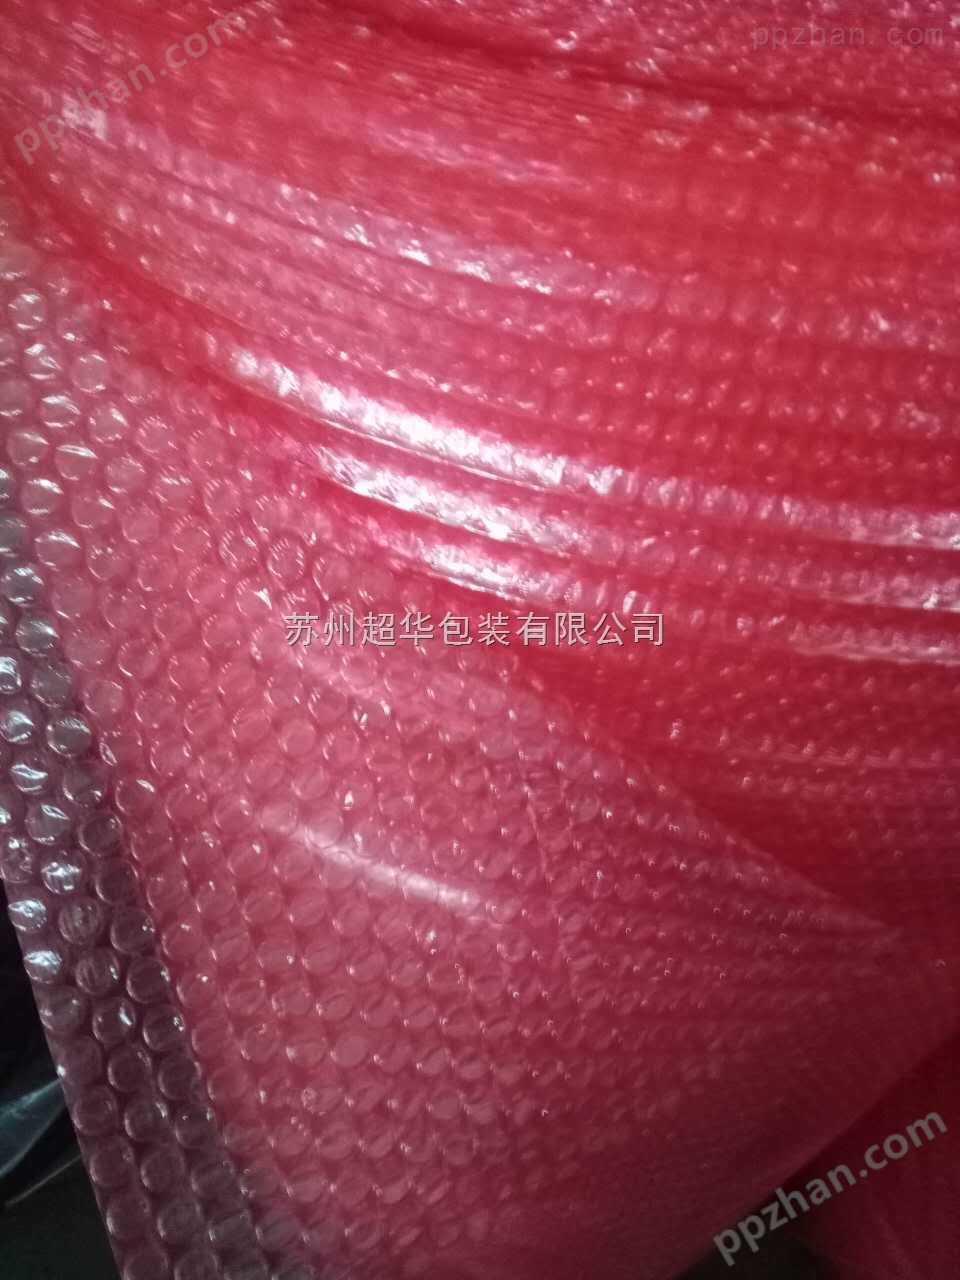 包装制品防静电气泡膜 红色气泡膜卷批量供应 工厂直销